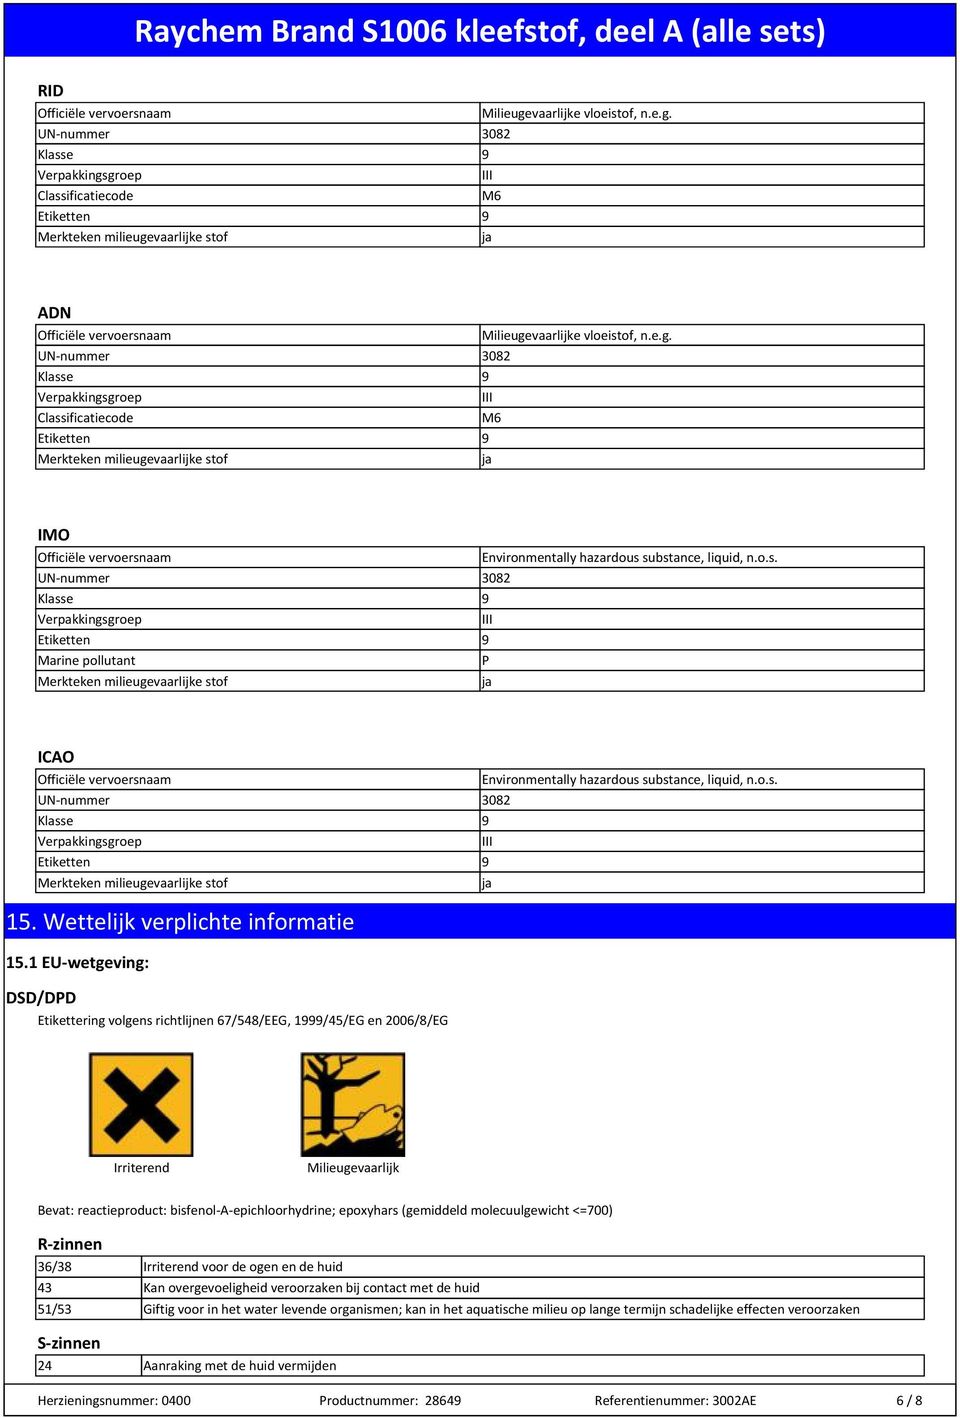 1 EU-wetgeving: DSD/DPD Etikettering volgens richtlijnen 67/548/EEG, 1/45/EG en 2006/8/EG Irriterend Milieugevaarlijk Bevat: reactieproduct: bisfenol-a-epichloorhydrine; epoxyhars (gemiddeld